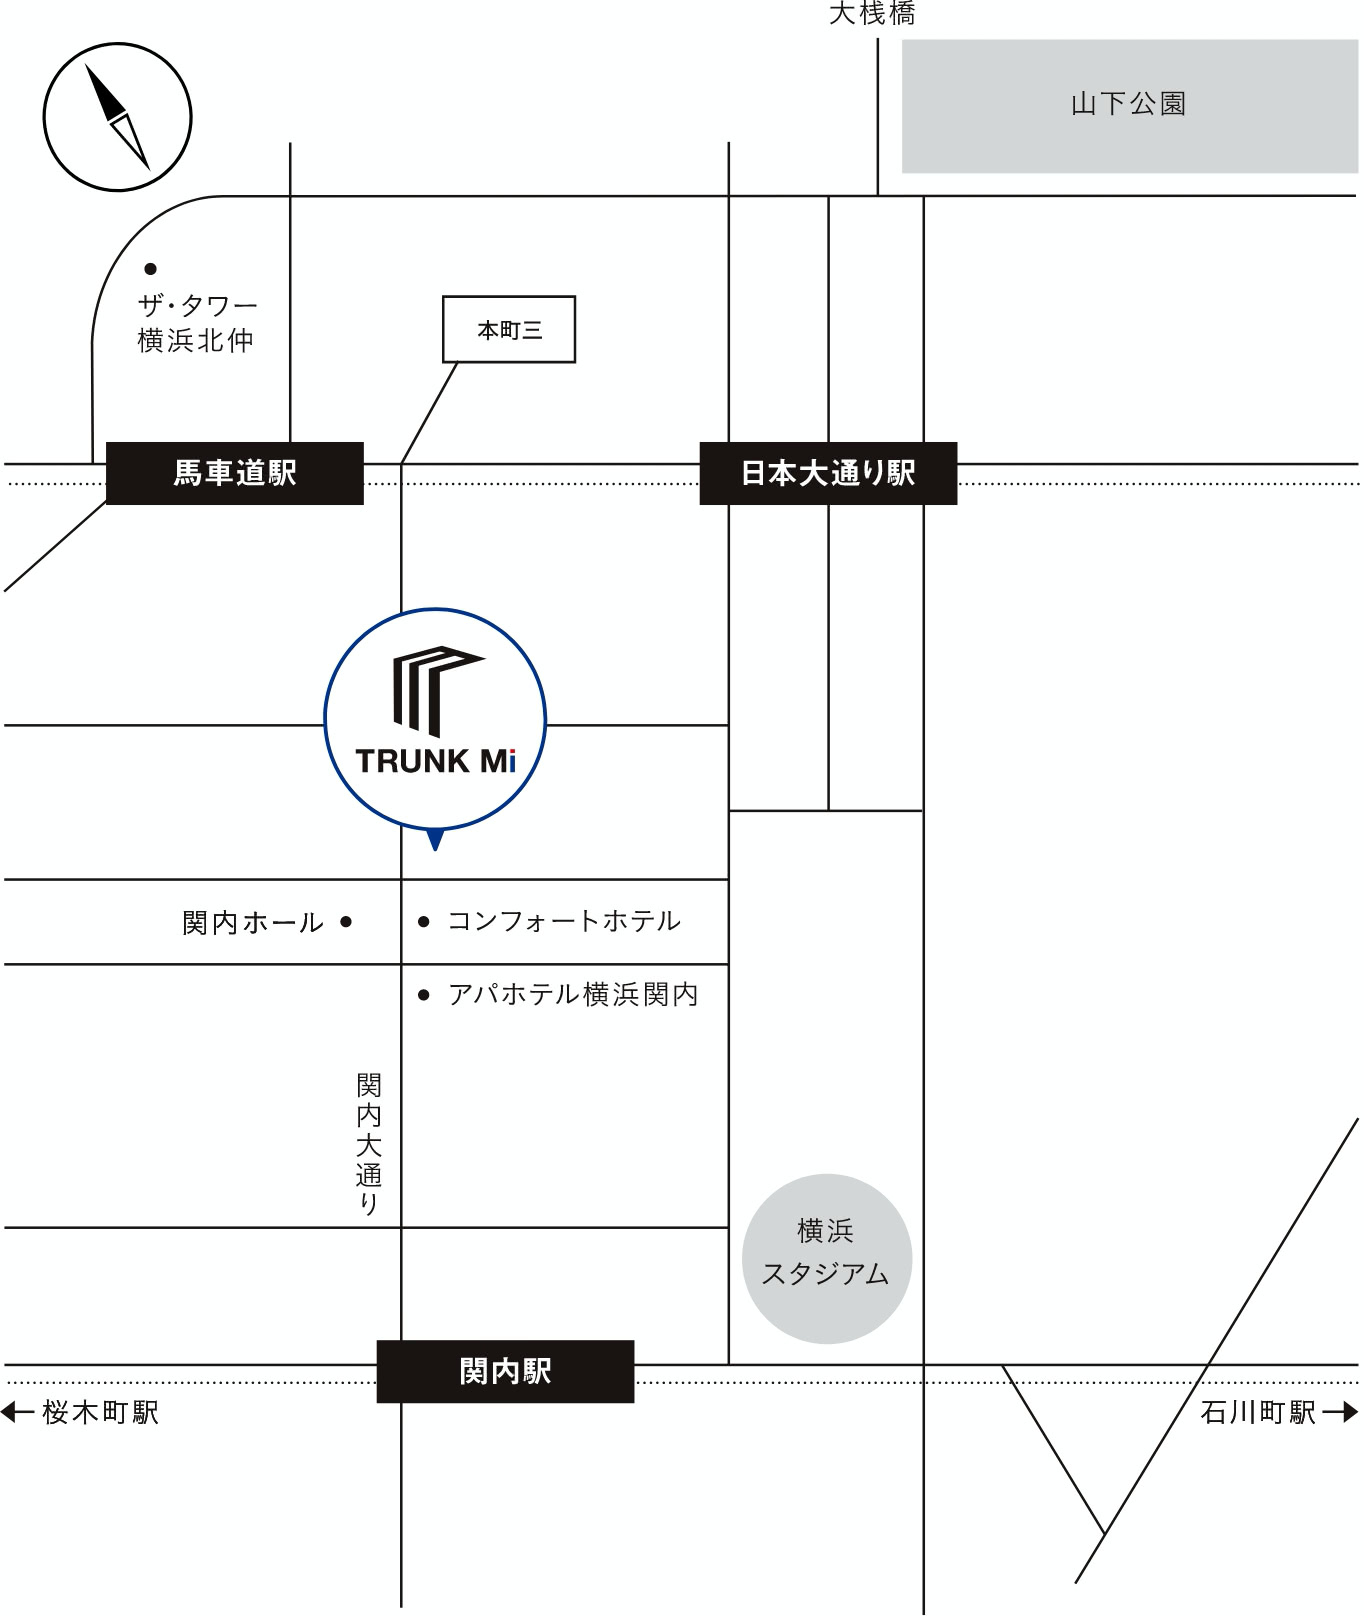 三井不動産レジデンシャルのレンタル収納 - TRUNK Mi - 関内店